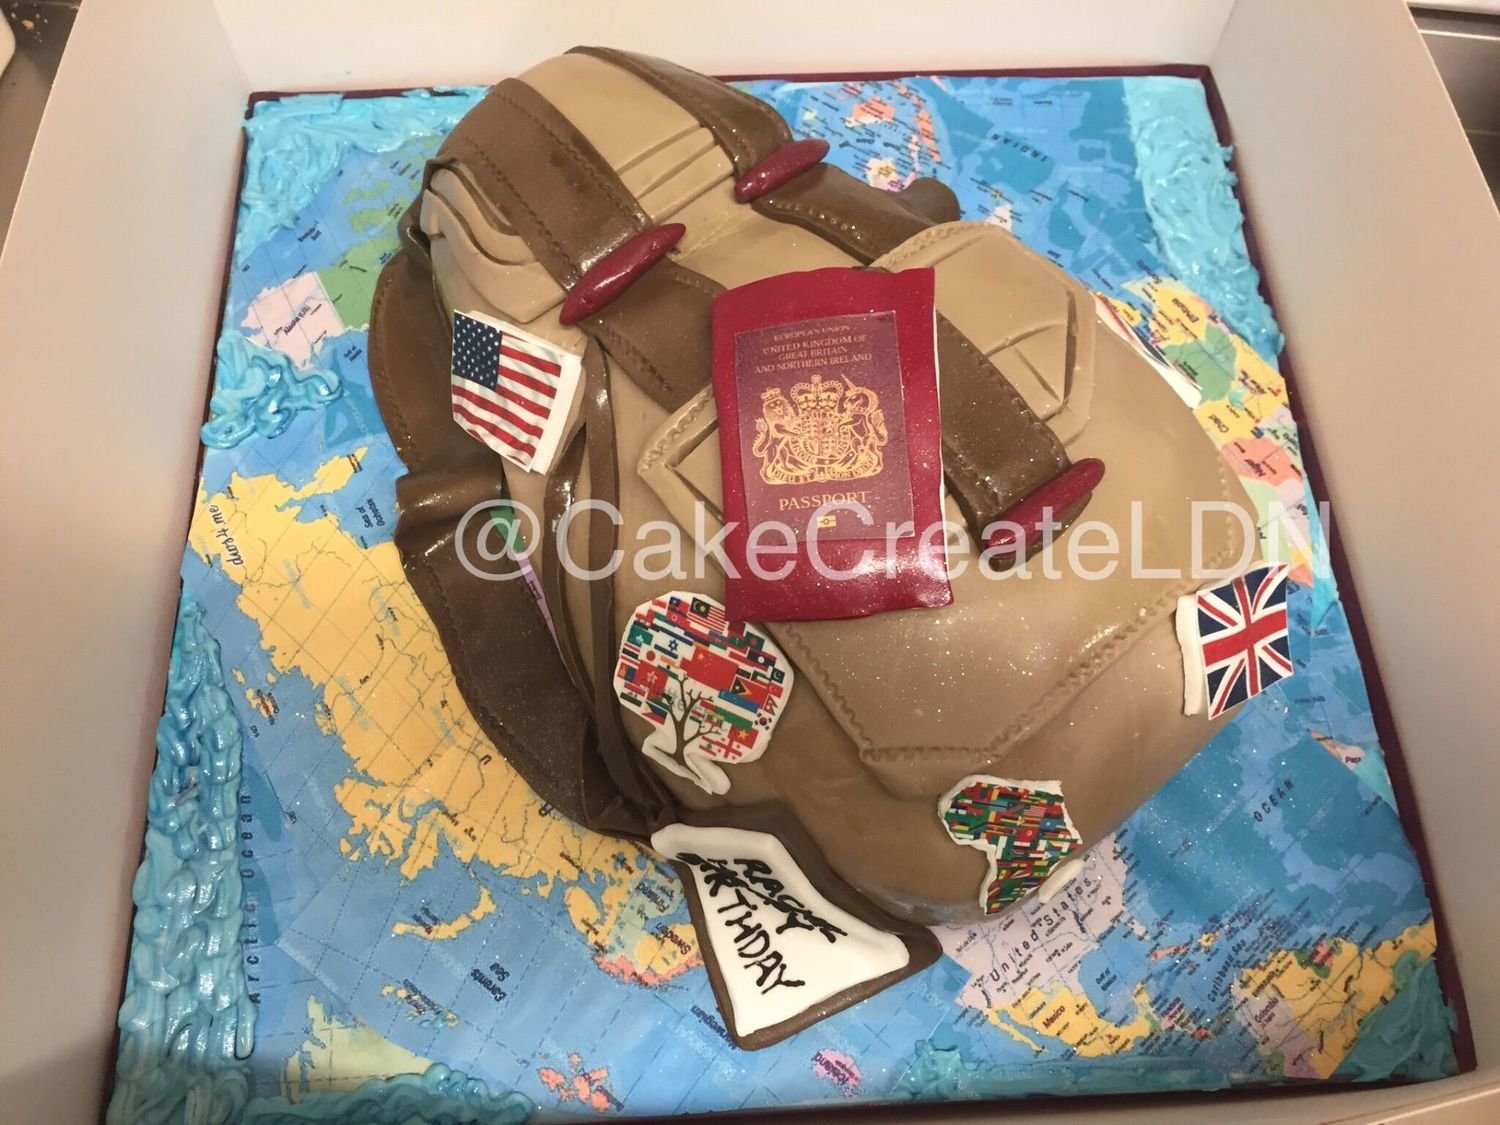 166. Golf Cake Topper Wedding Cake Topper Birthday Cake - Etsy Ireland